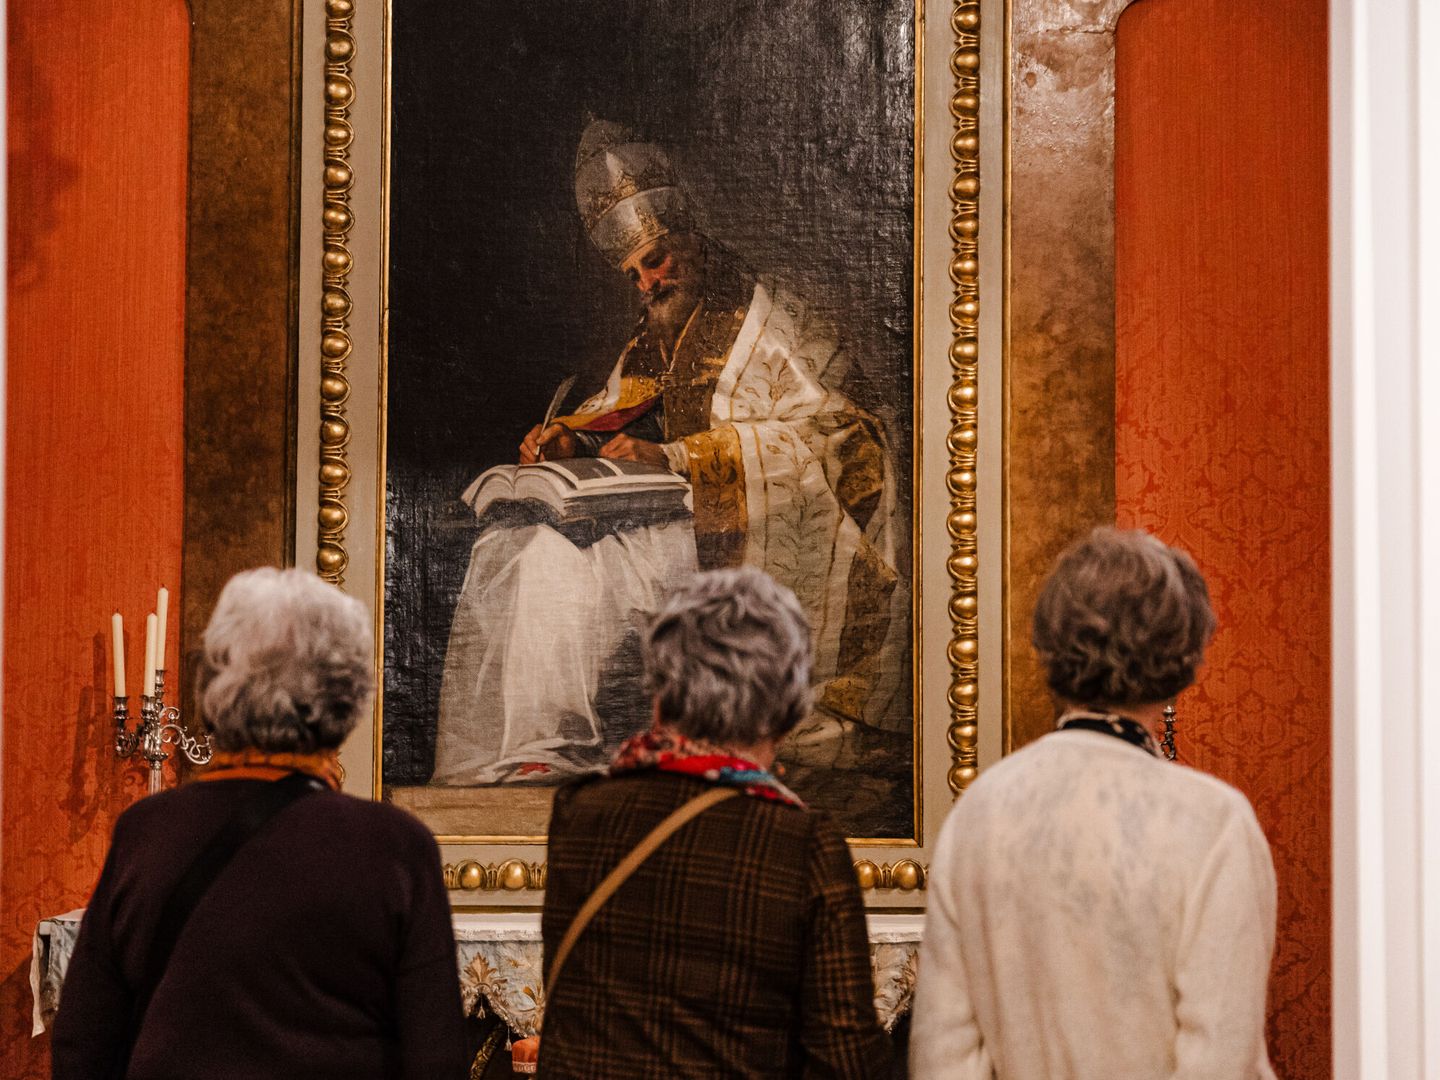 Tres mujeres contemplan una obra expuesta en el Museo del Romanticism. (EP)